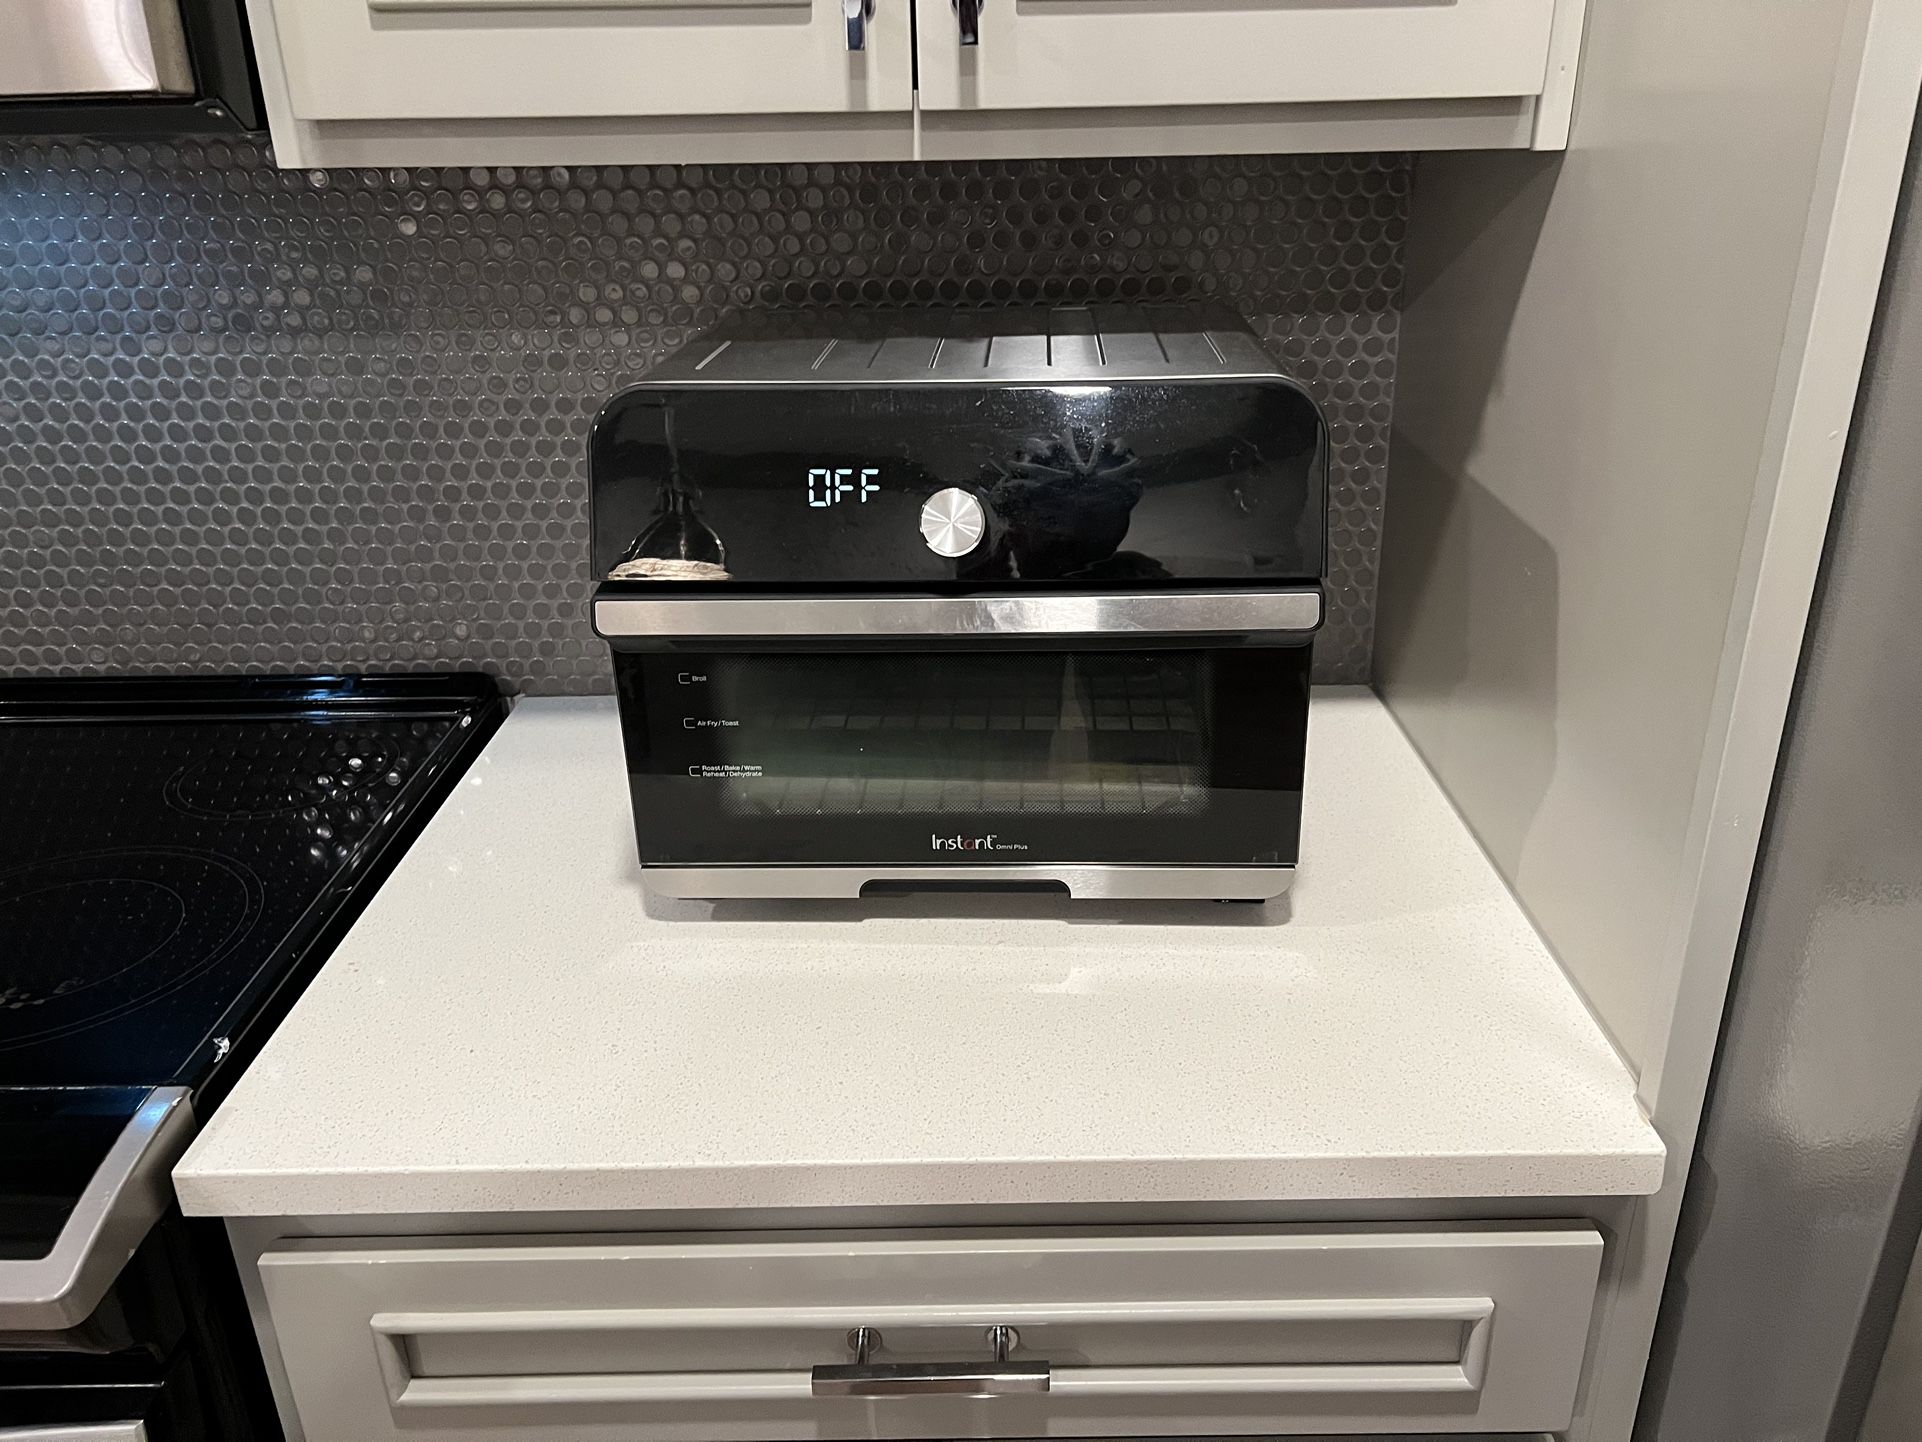 InstantPot Omni Plus Air Fryer Oven